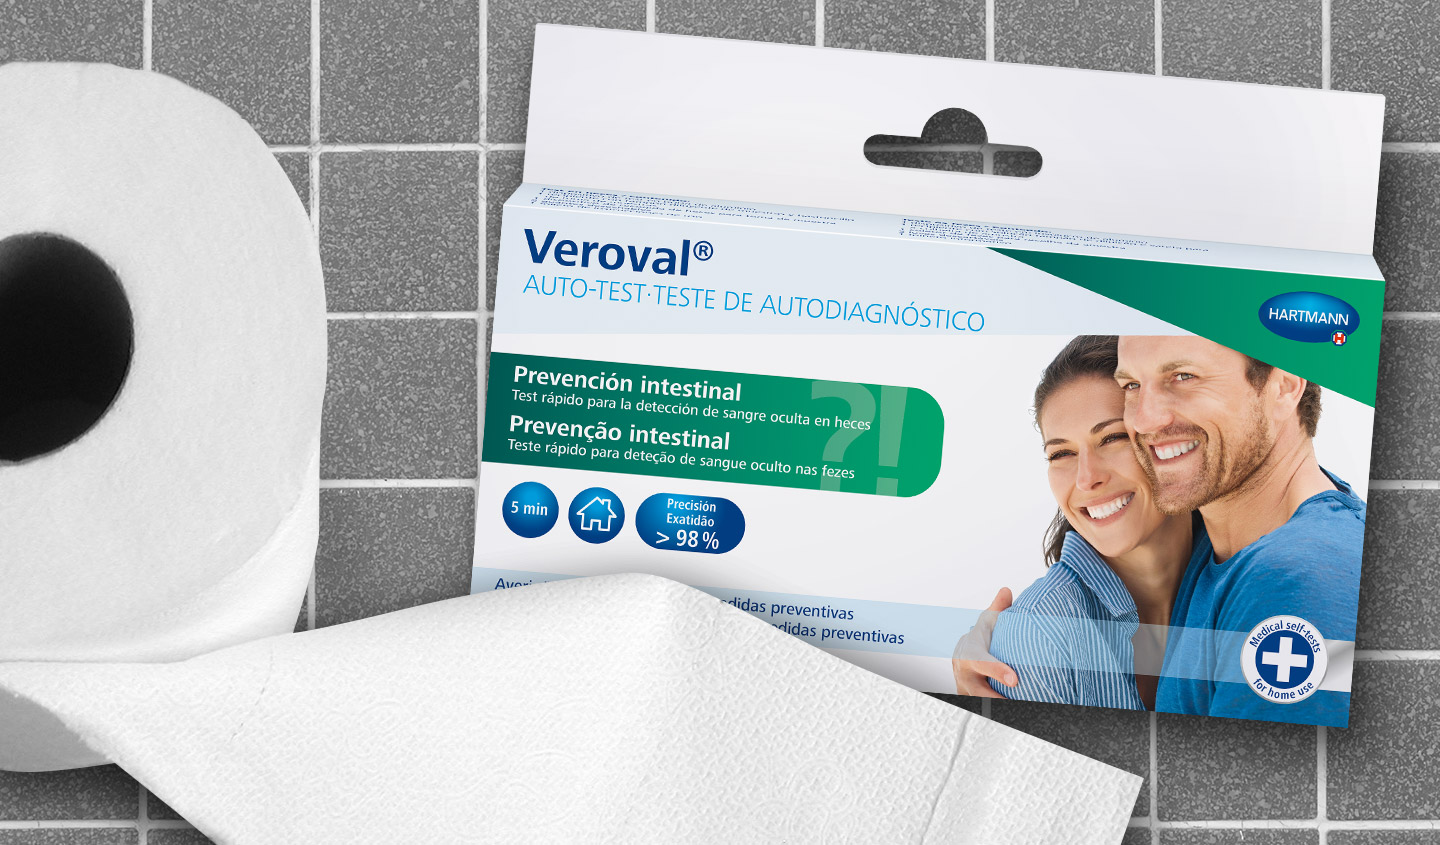 Papel higienico y un pack de auto-test para prevención intestinal de Veroval